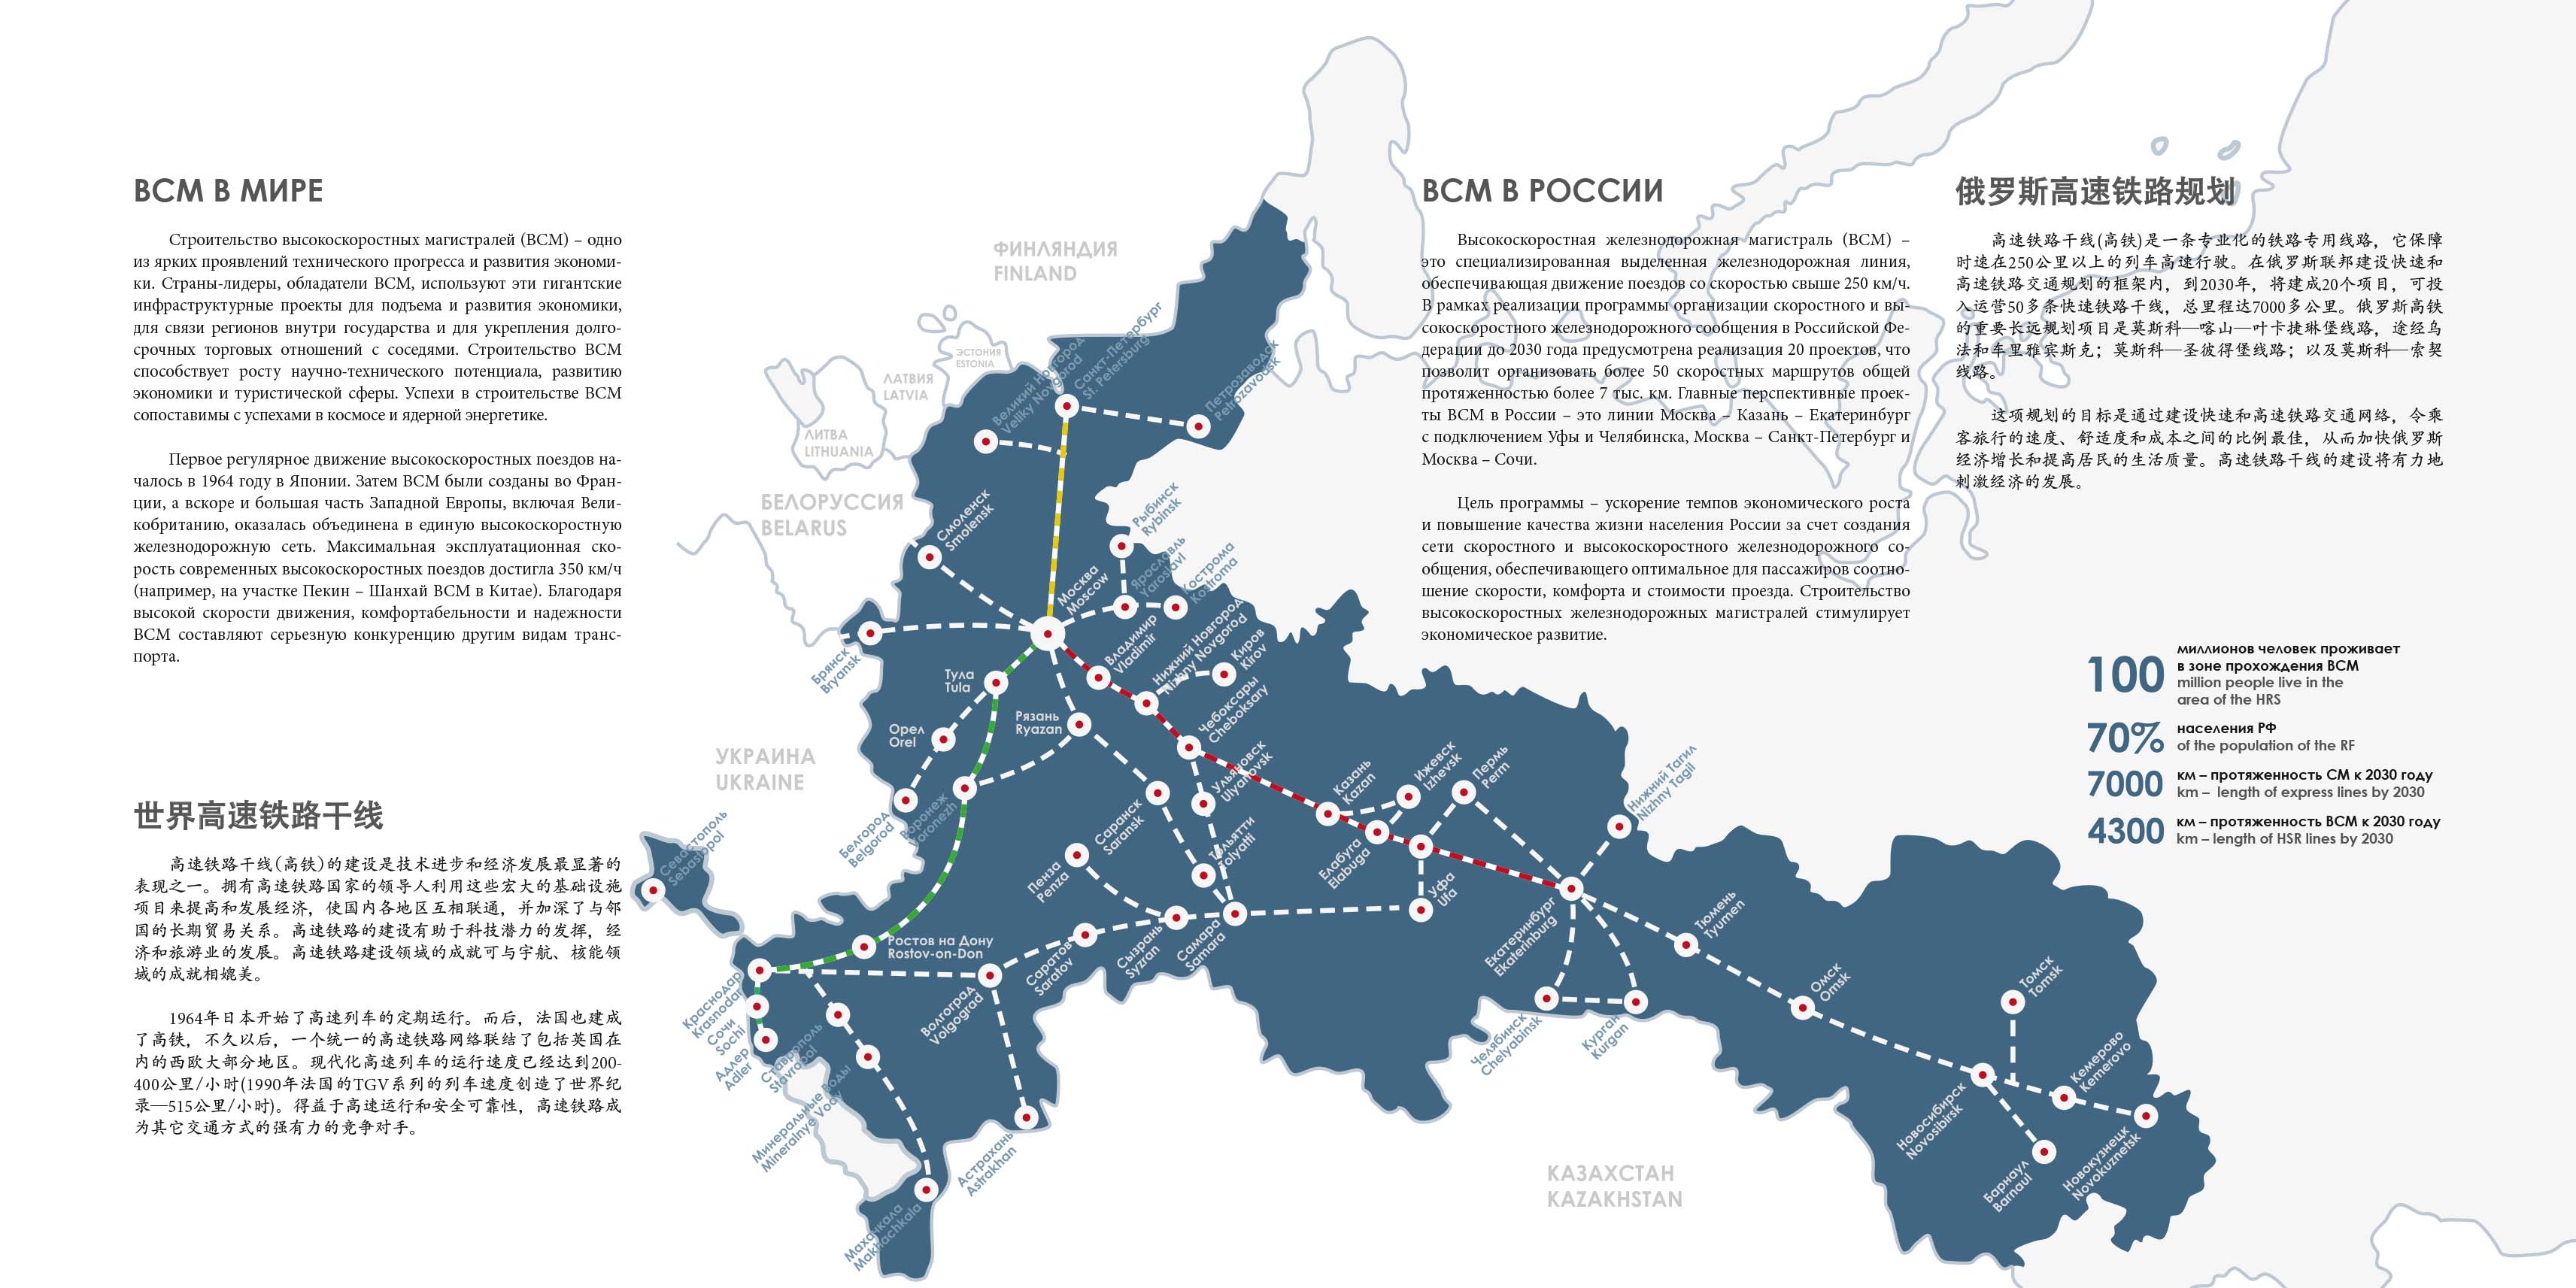 Всм на карте тверской области. Карта высокоскоростных магистралей в России. Сеть высокоскоростных железных дорог в России. Карта железных дорог России до 2030 года. План развития железных дорог России до 2030 года карта.